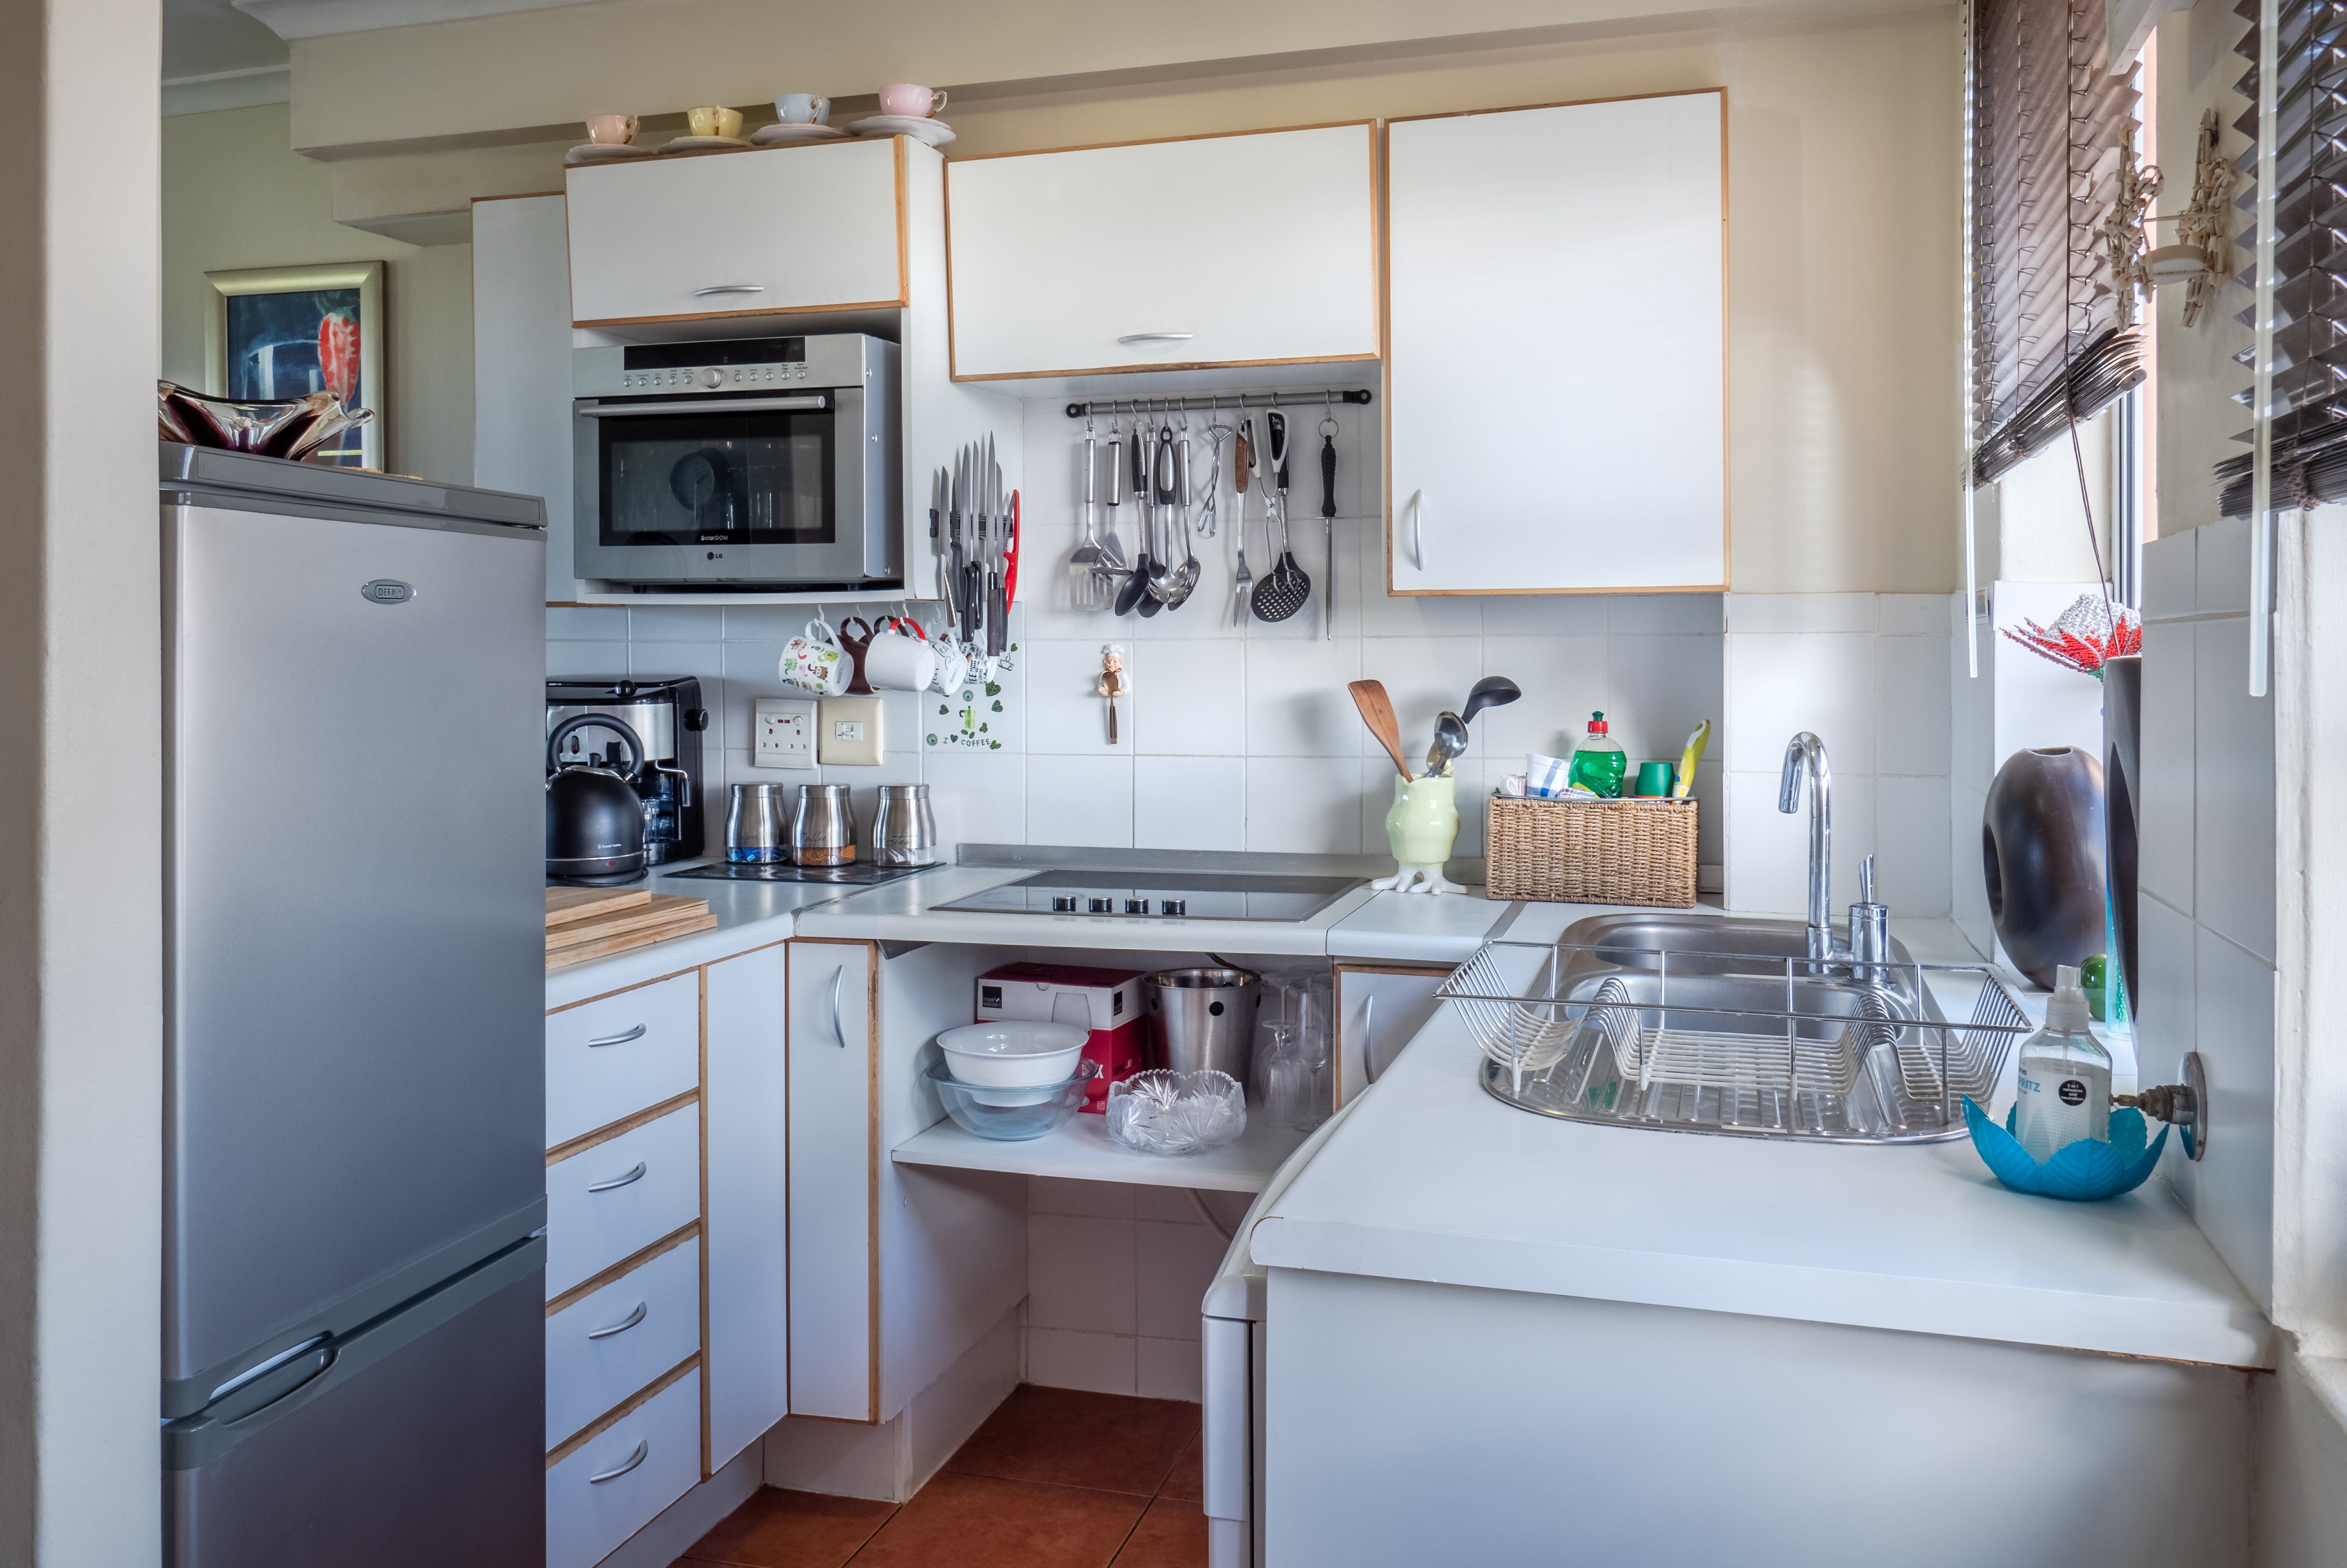 Кухонные шкафы в маленьком помещении - какие цвета и типы будут уместны - Недвижимость